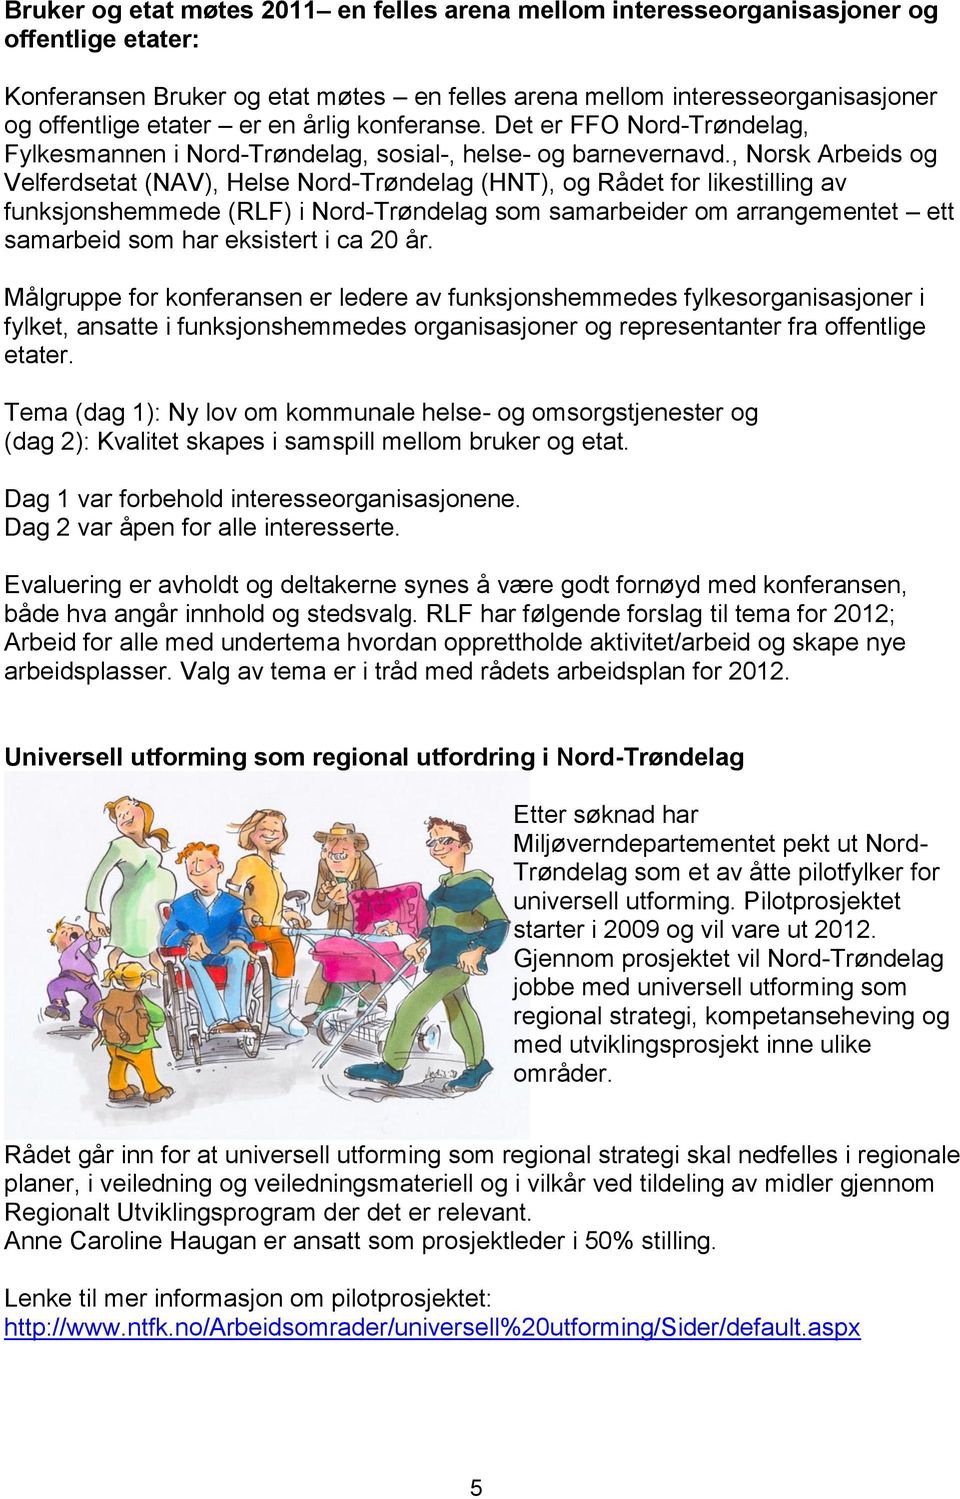 , Norsk Arbeids og Velferdsetat (NAV), Helse Nord-Trøndelag (HNT), og Rådet for likestilling av funksjonshemmede (RLF) i Nord-Trøndelag som samarbeider om arrangementet ett samarbeid som har